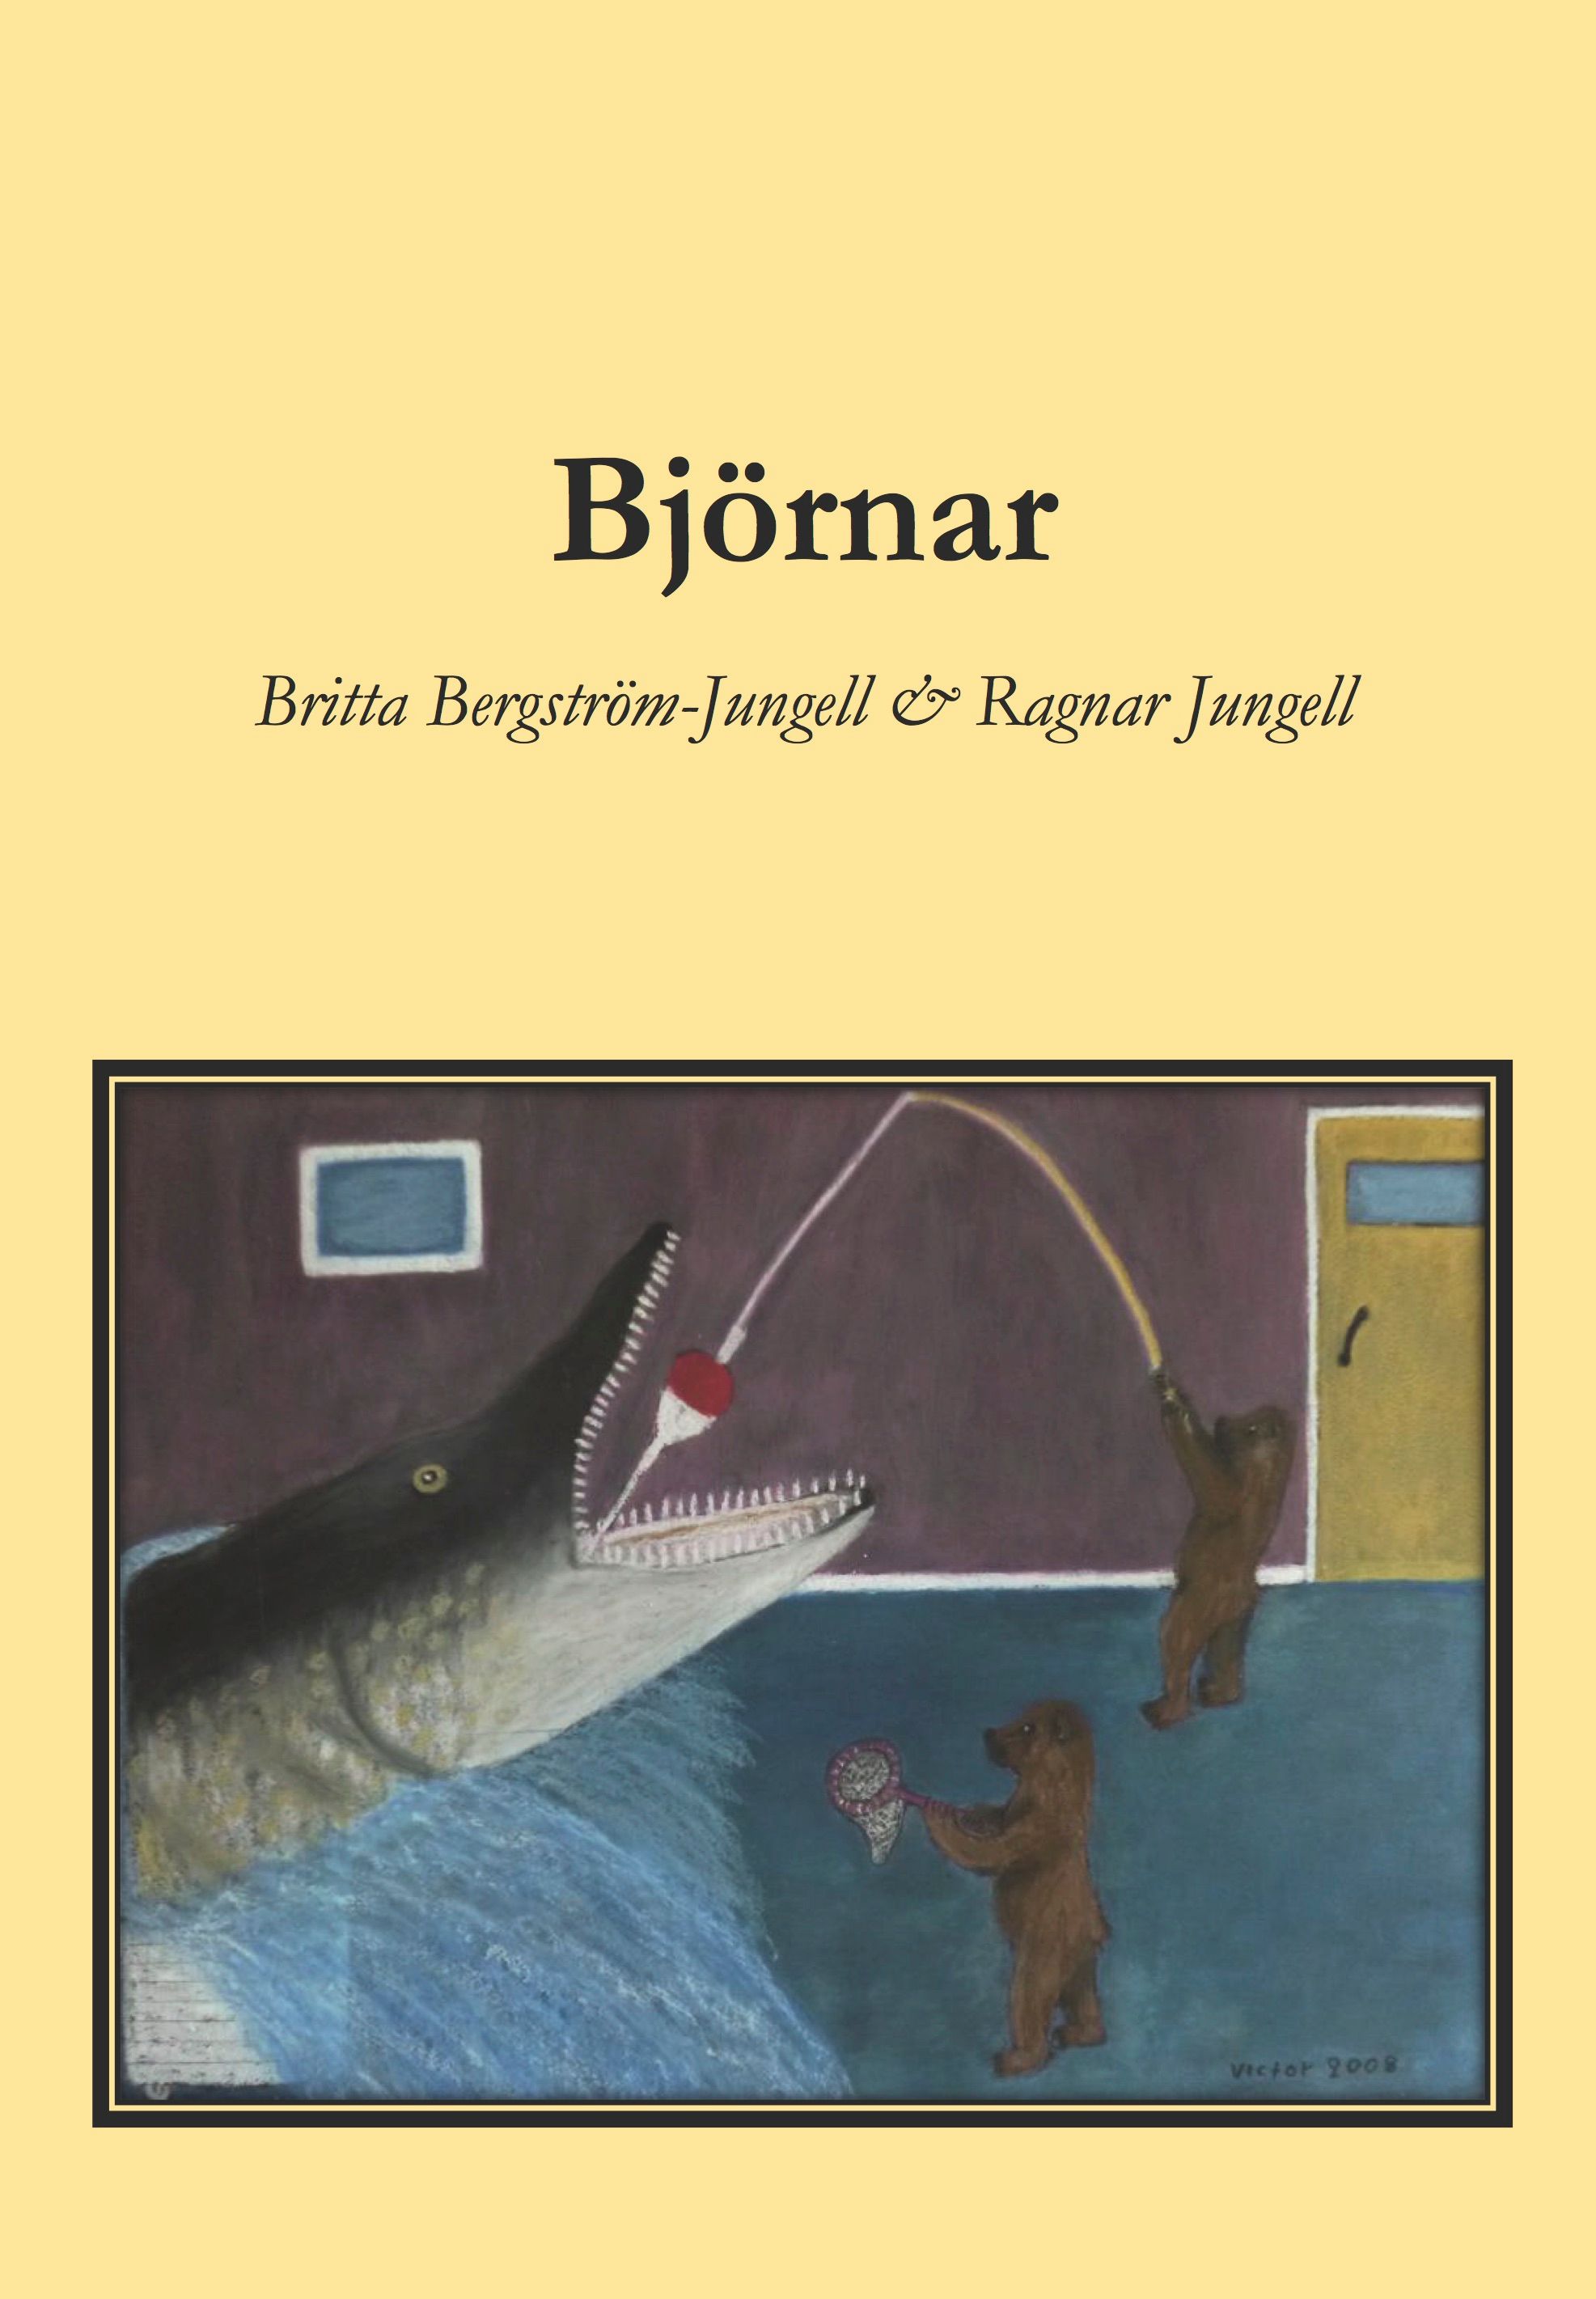 Björnar, eBook by Britta Bergström-Jungell, Ragnar Jungell